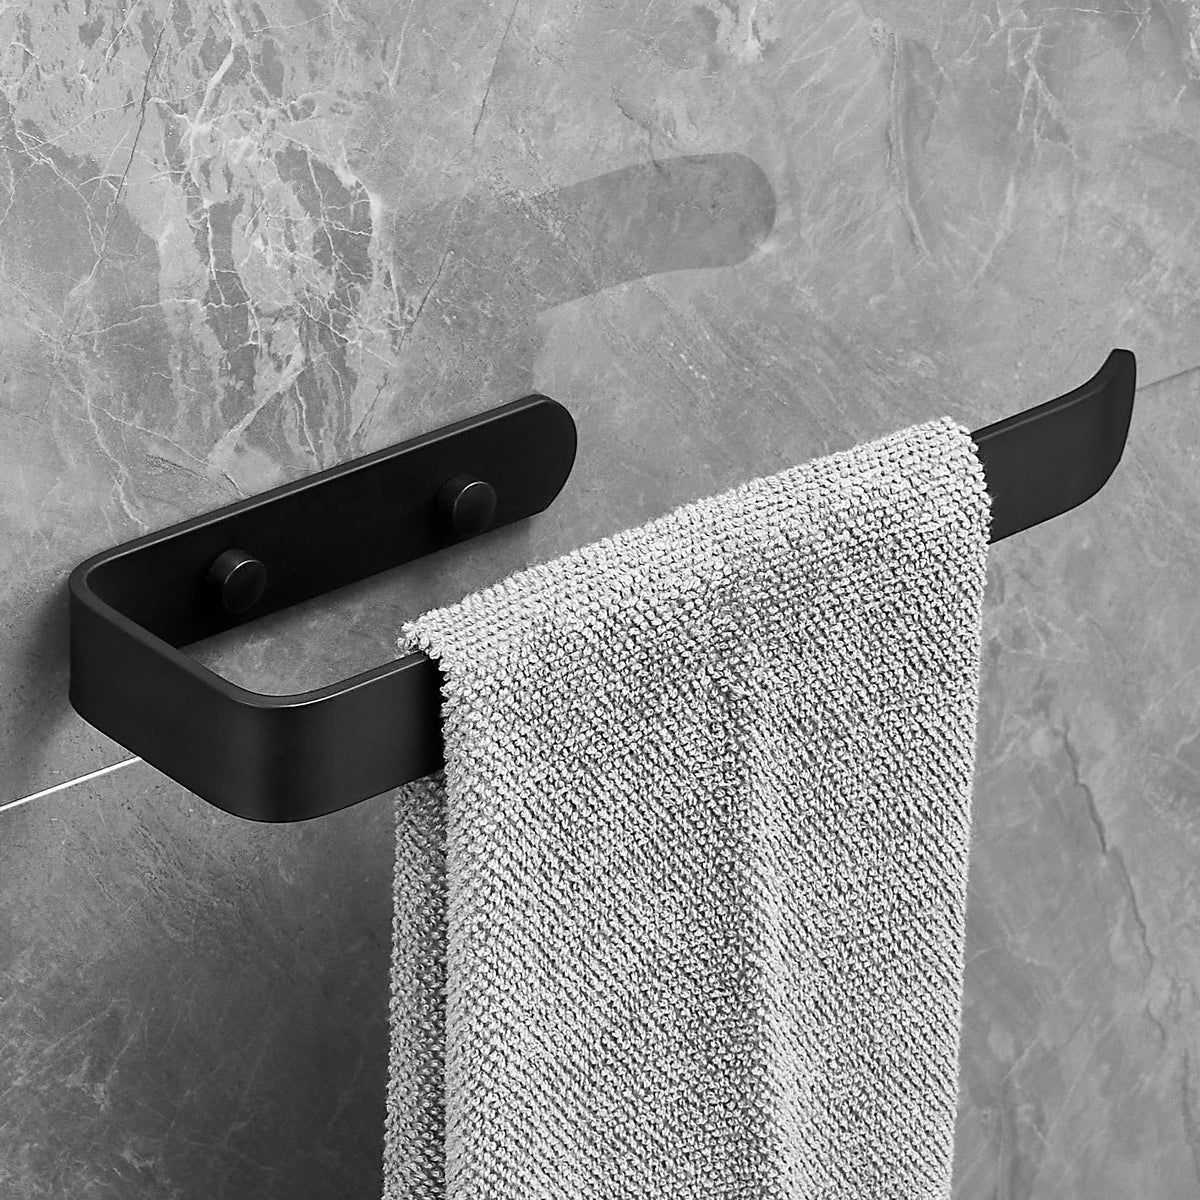 Plantex Space Aluminium Napkin Ring/Towel Ring/Napkin Holder/Towel Holder/Towel Hanger/Bathroom Accessories (Black)